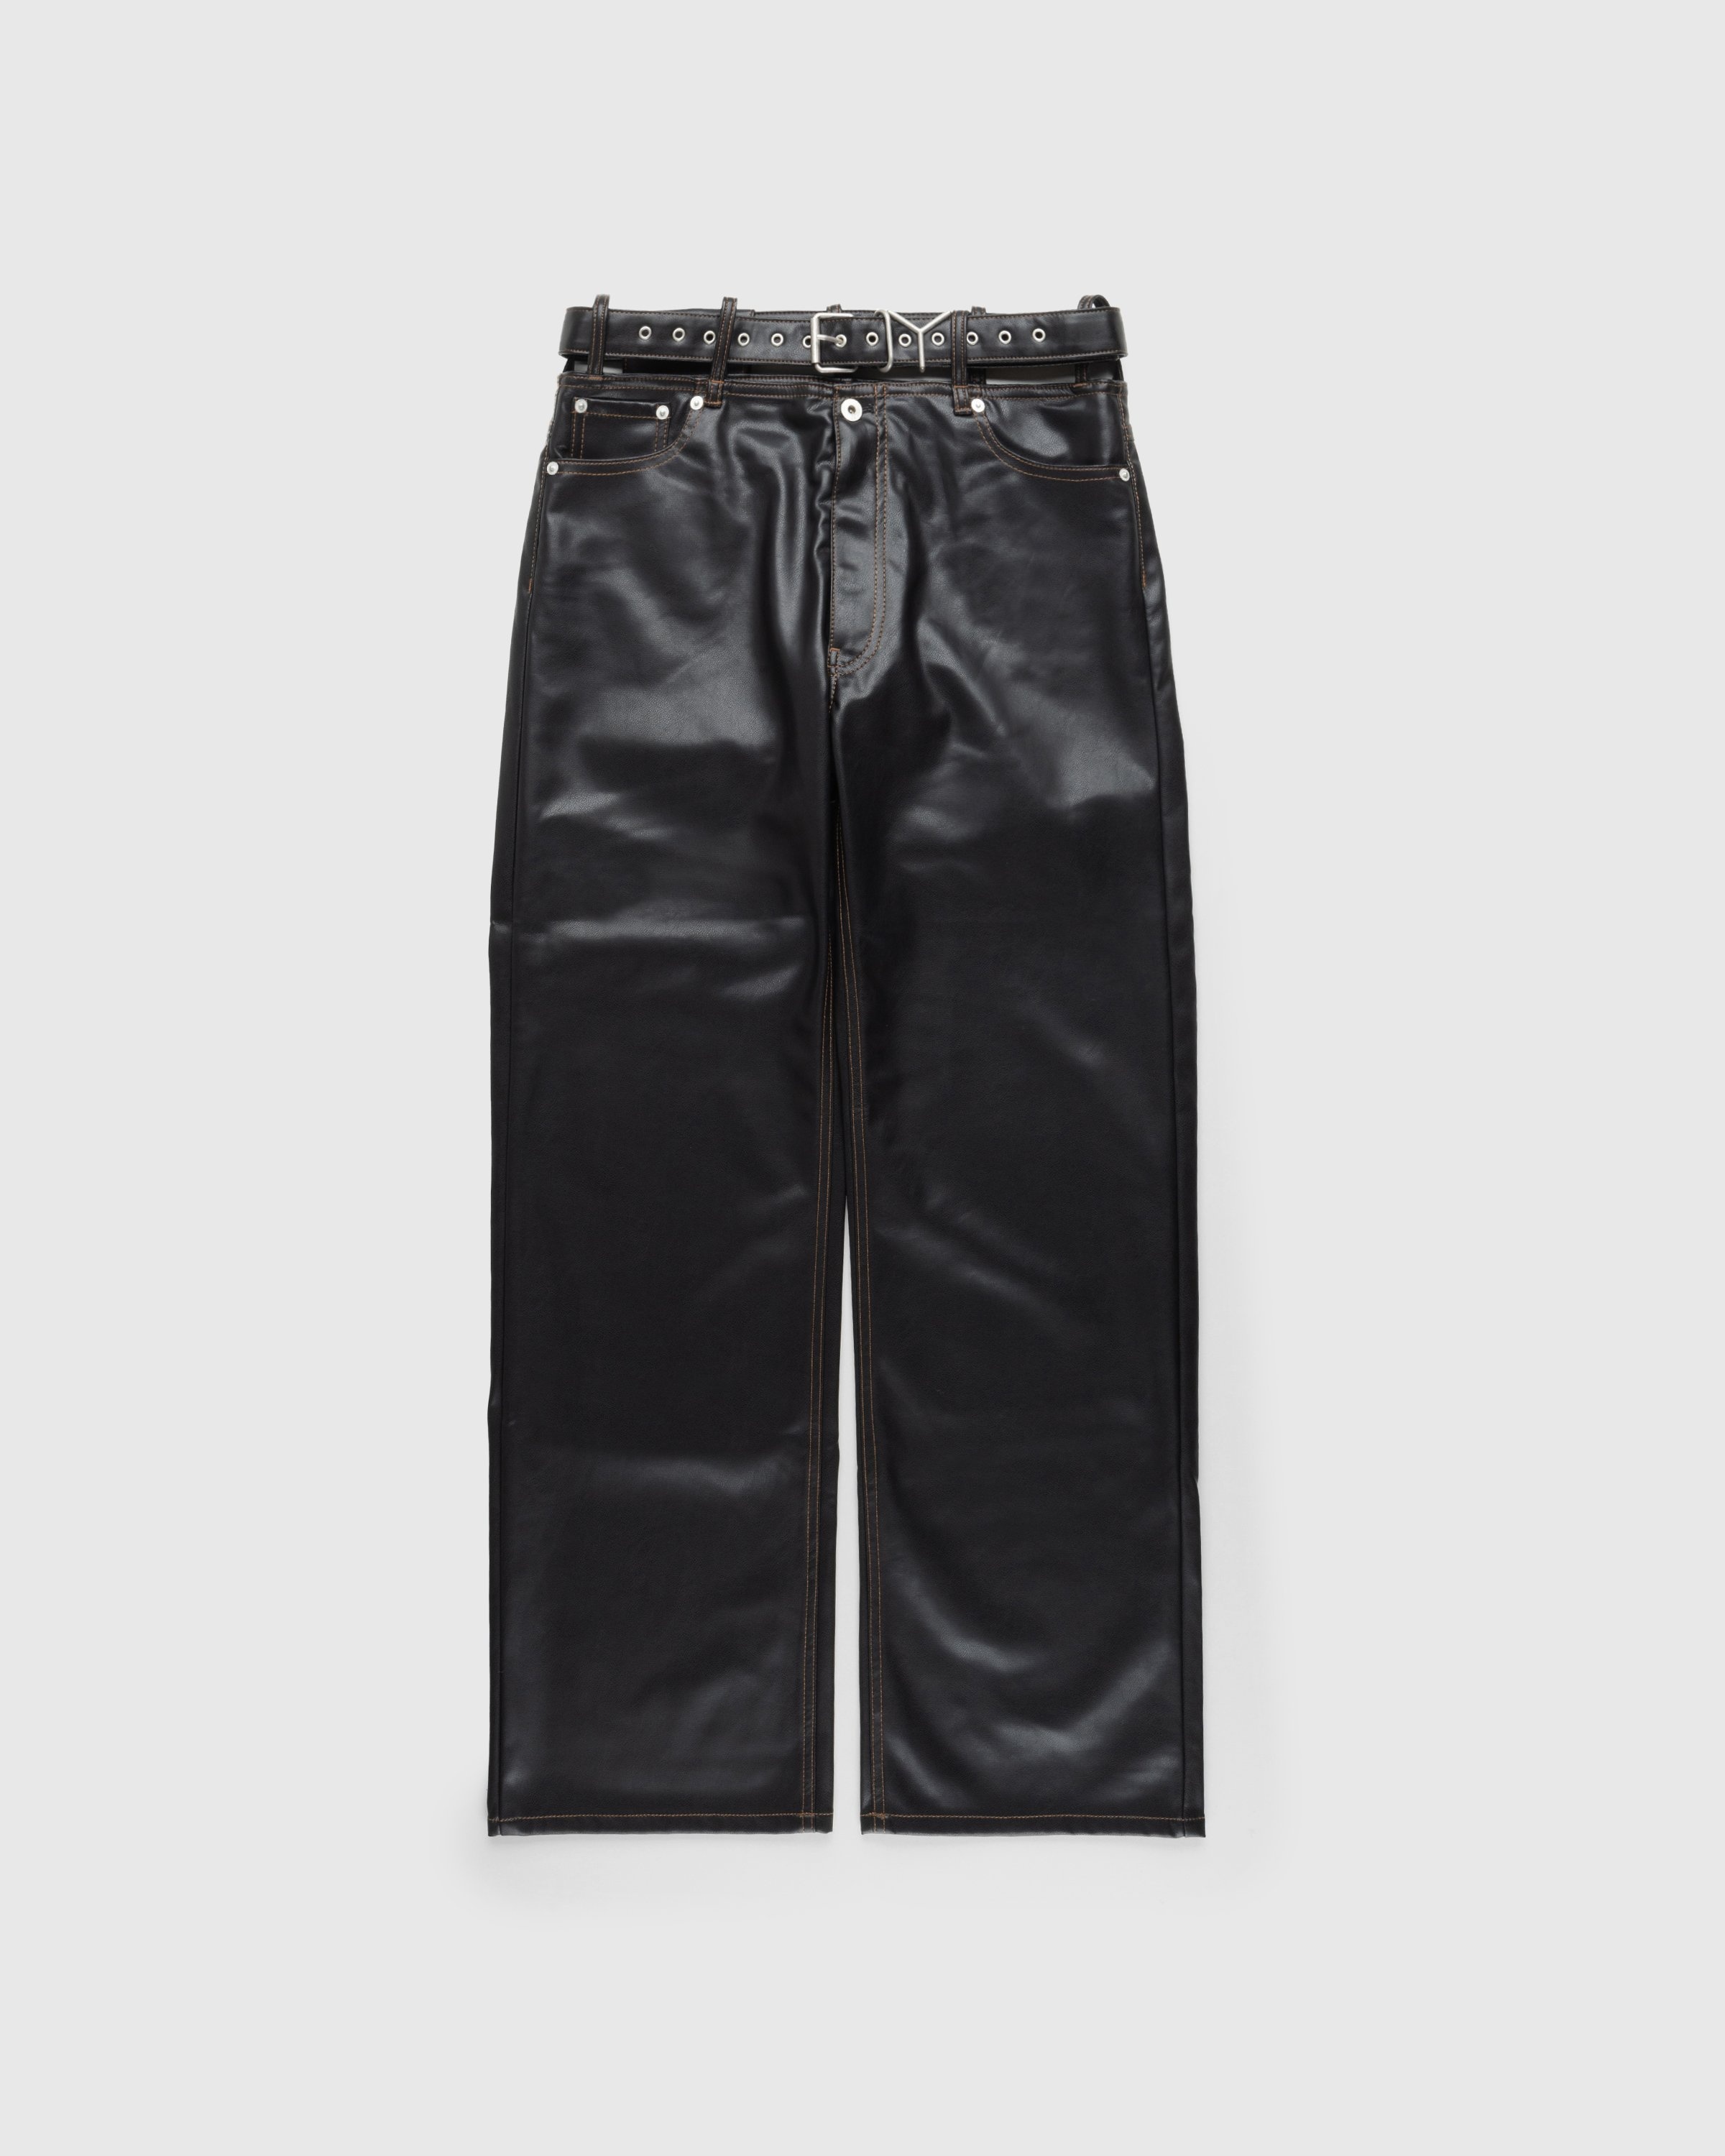 Y/Project – Y Belt Leather Pants Black - Pants - Black - Image 1